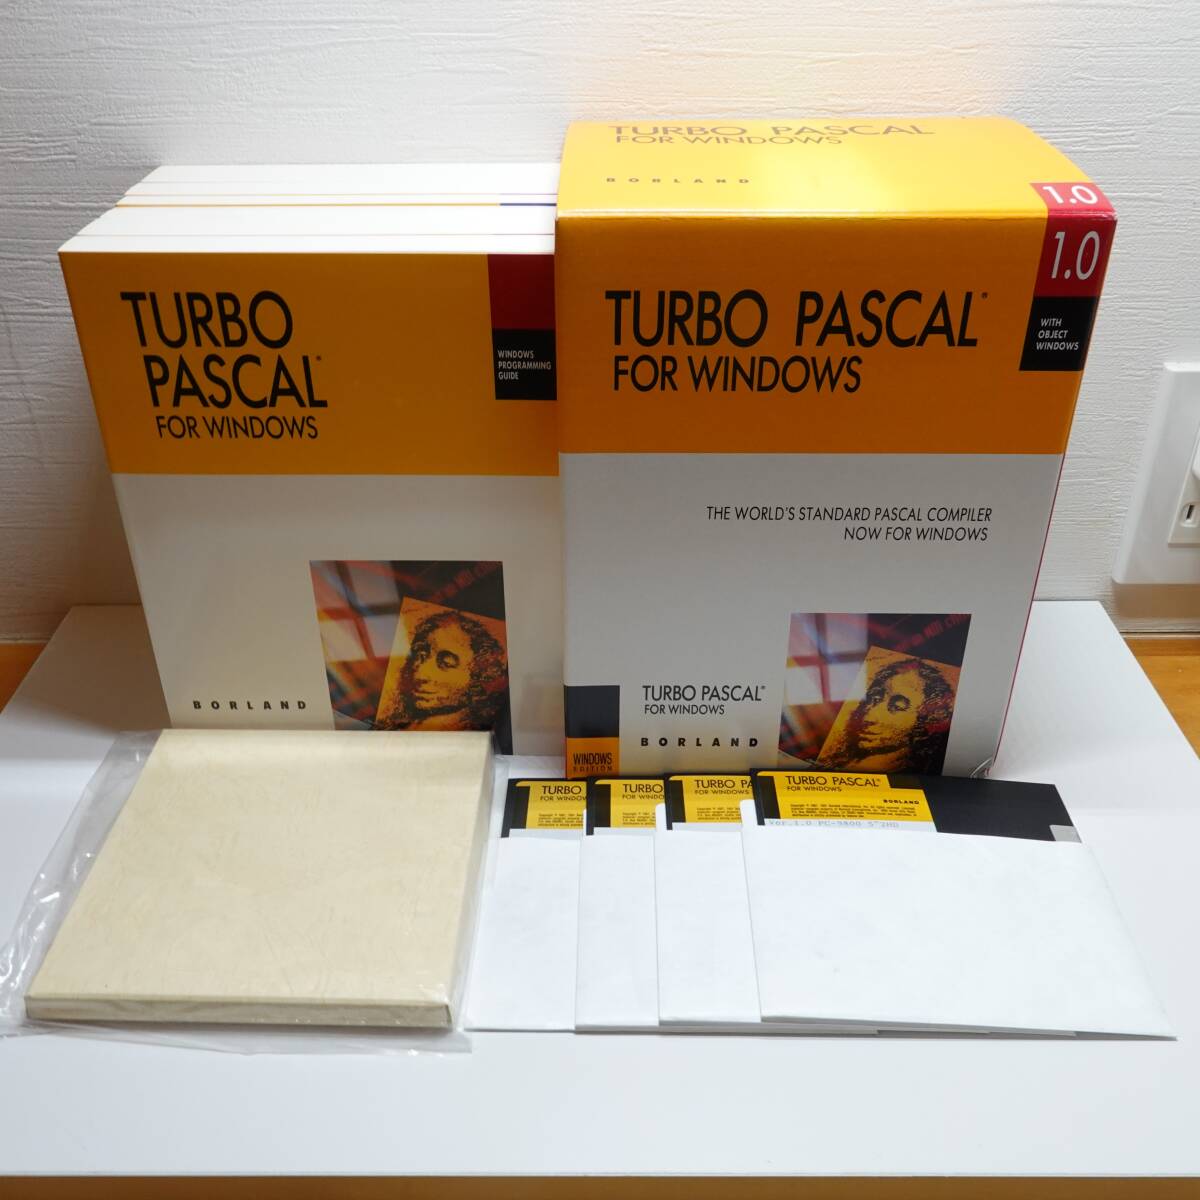 ver 1.0 TURBO PASCAL FOR WINDOWS BORLAND ボーランドジャパン 5インチ2HD 検索(9800 8800) YW101_画像1